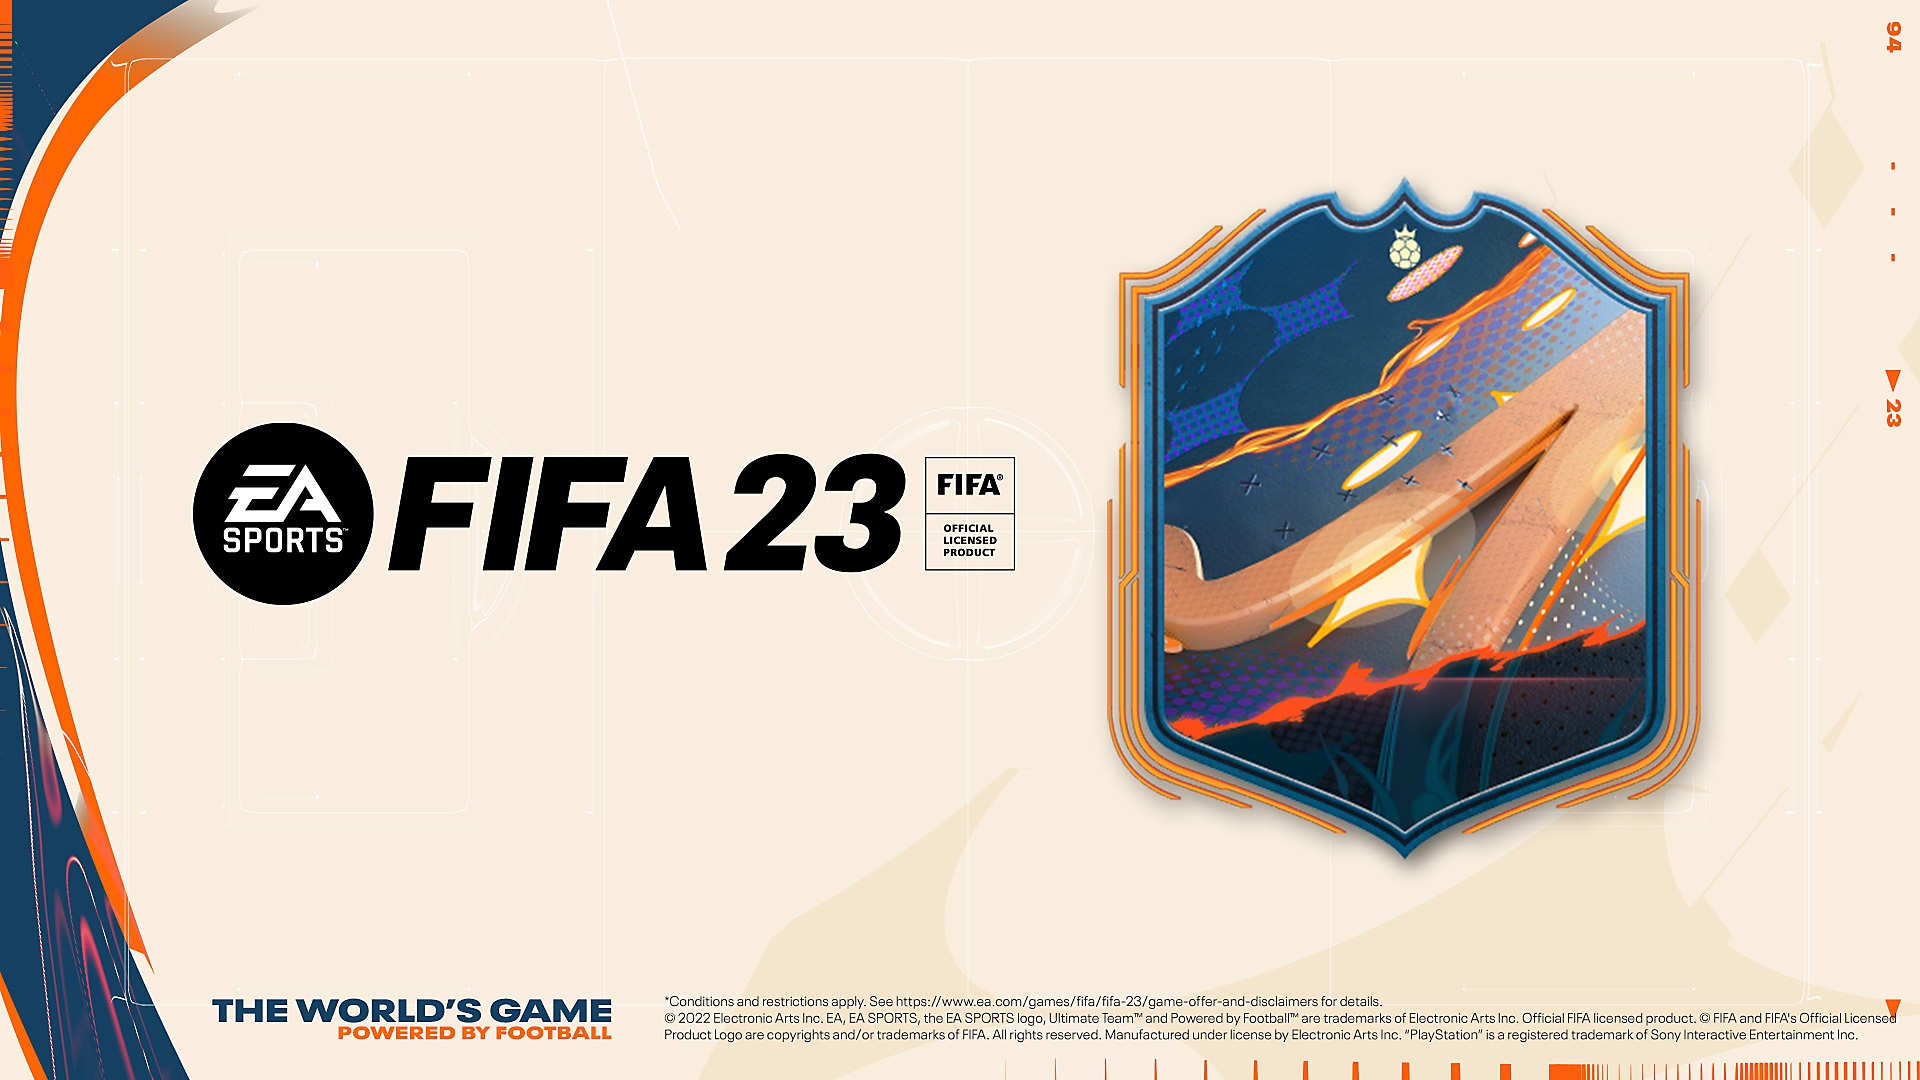 الأعمال الفنية الخاصة بطلب لعبة FIFA 23 المُقدمة من EA Sports مسبقًا تُظهر شارة متعددة الألوان وشعار FIFA 23